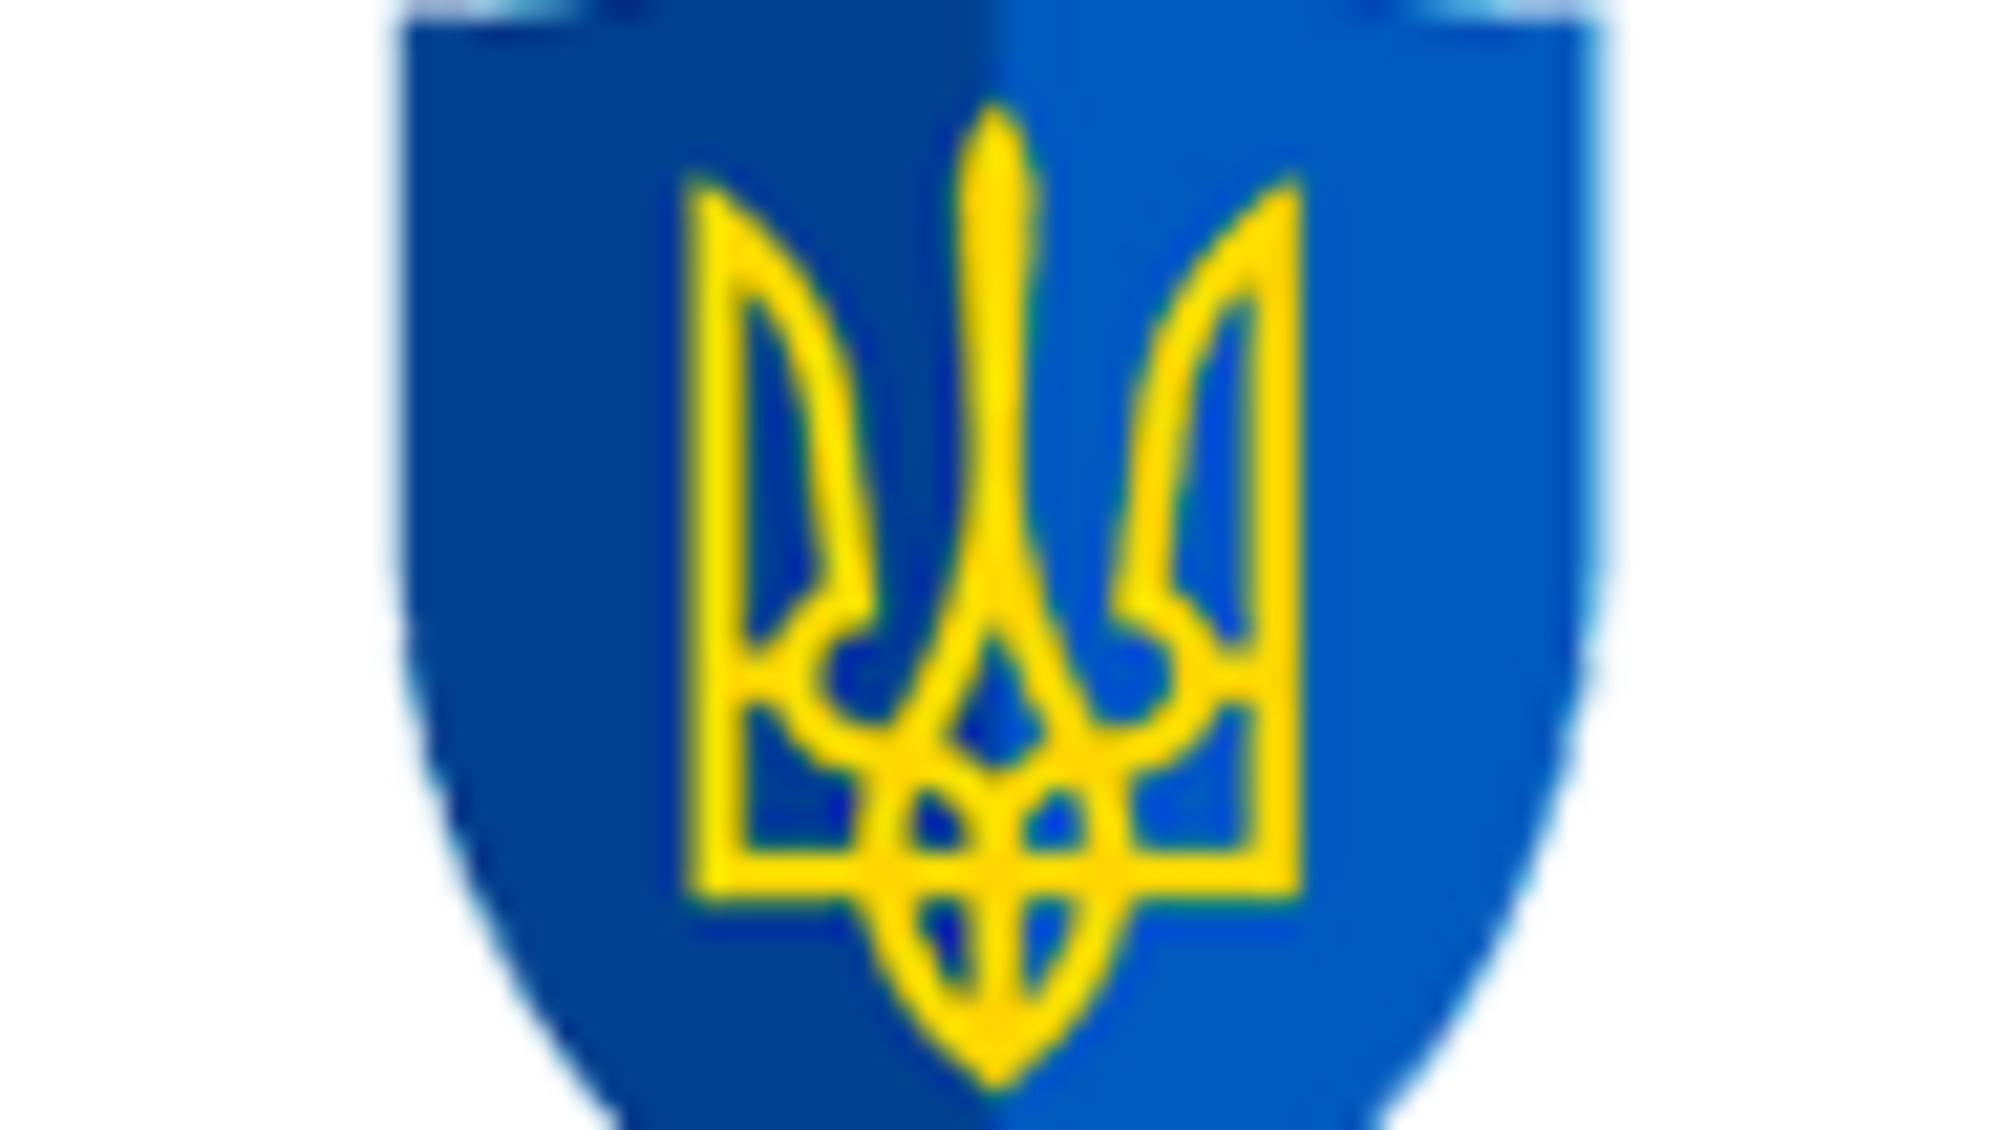 Ірина Венедіктова провела оперативну нараду з керівництвом Служби безпеки України (ФОТО)